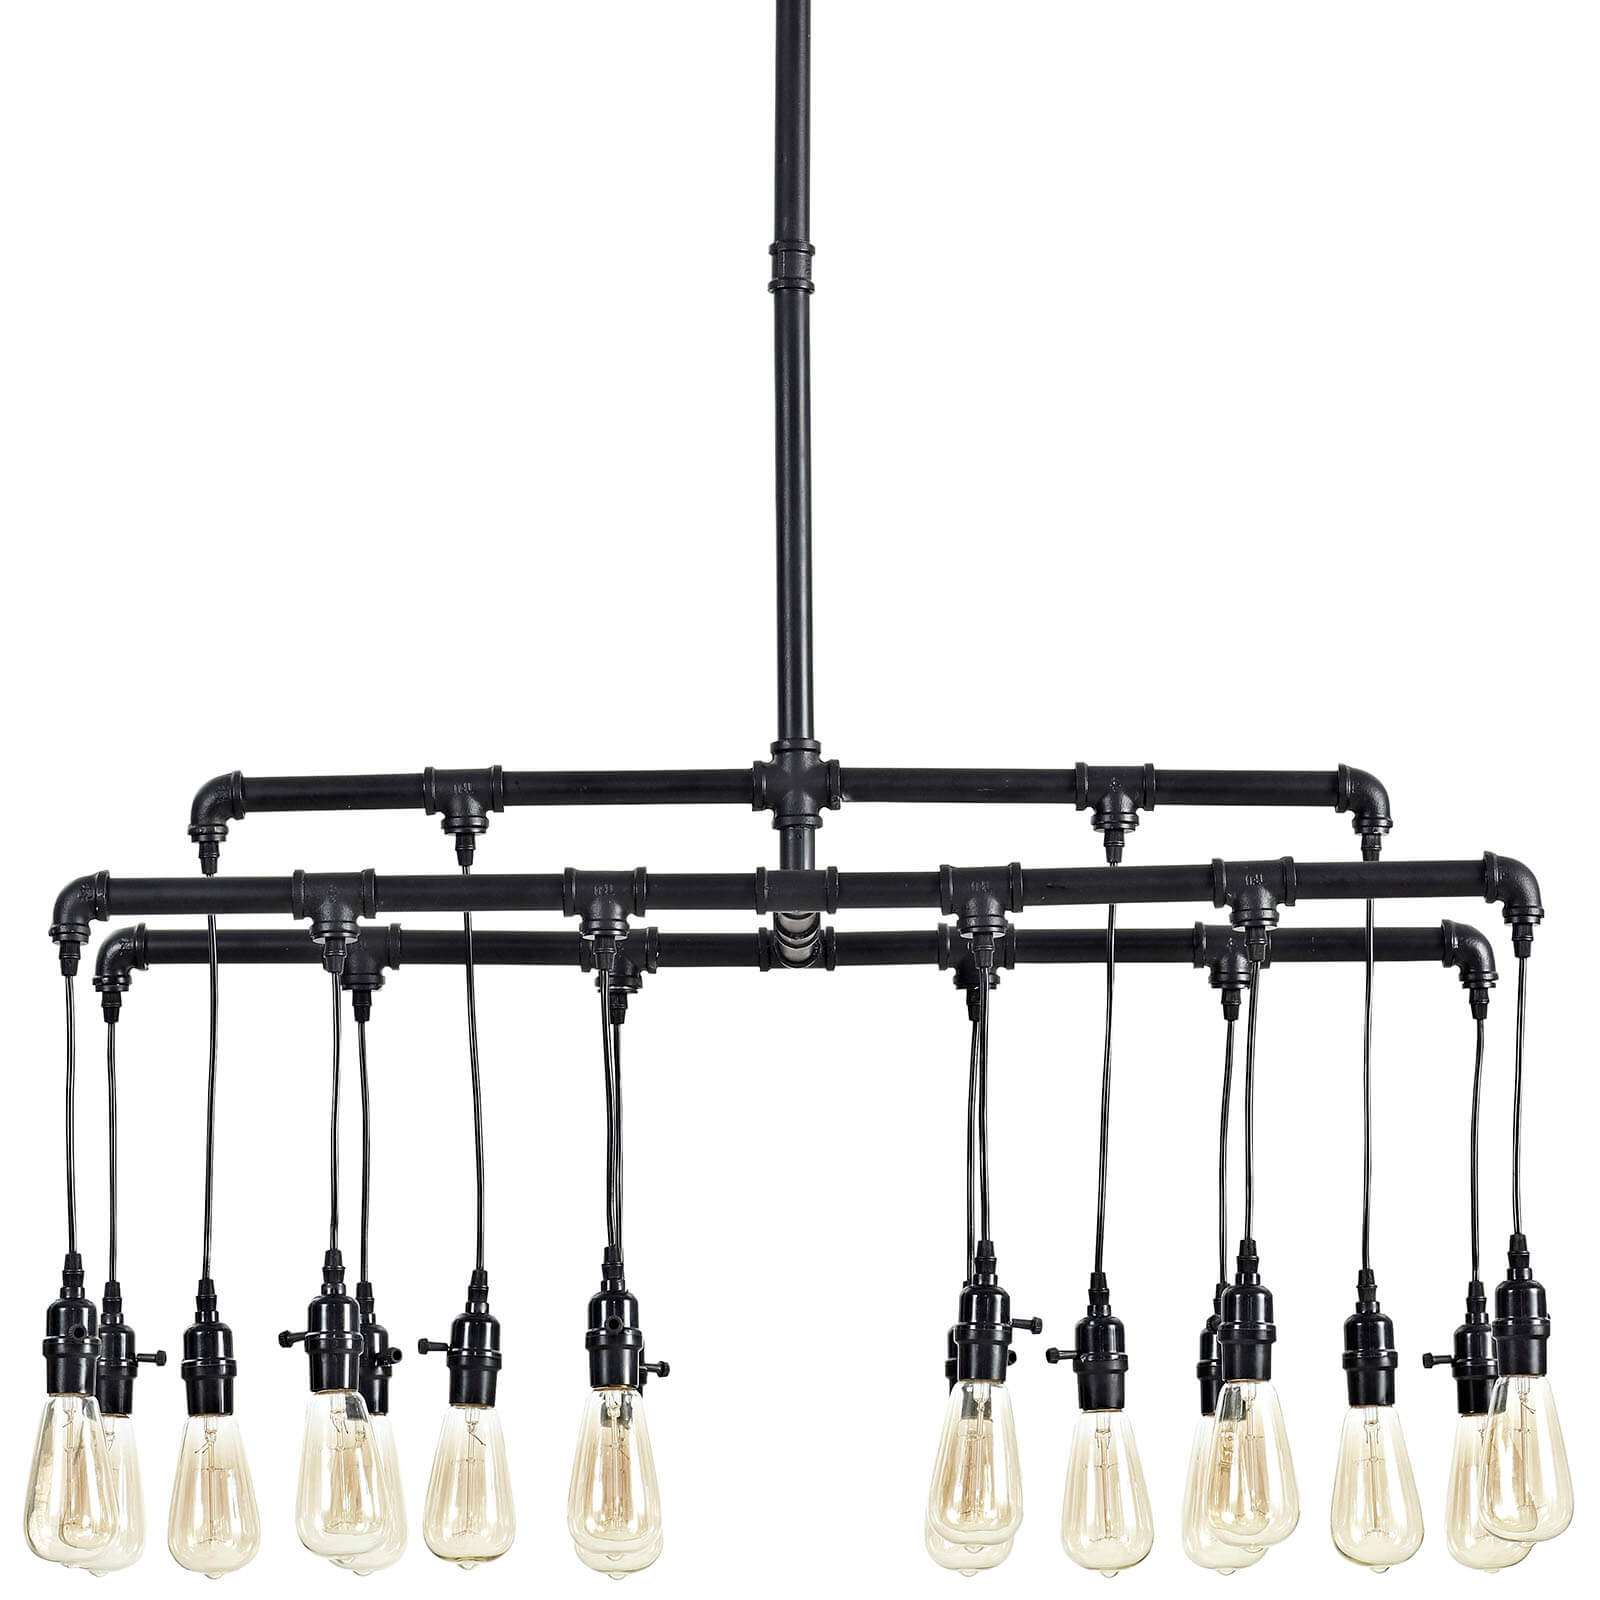 contemporary-lighting-industrial-light-bulbs.jpg